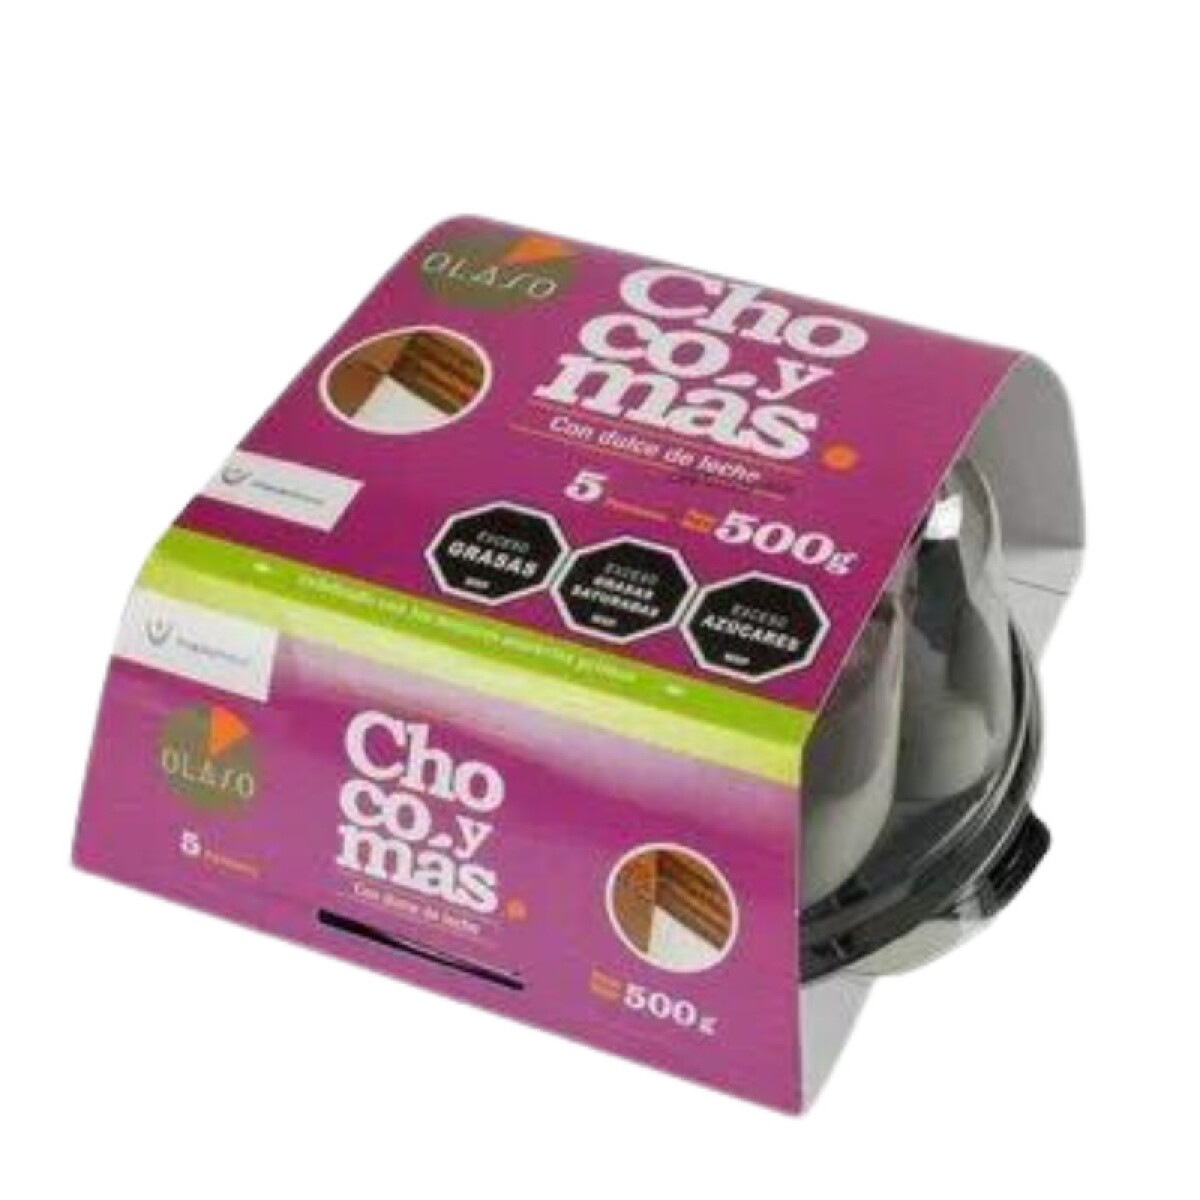 Torta Choco y mas baby Olaso - 400 gr 